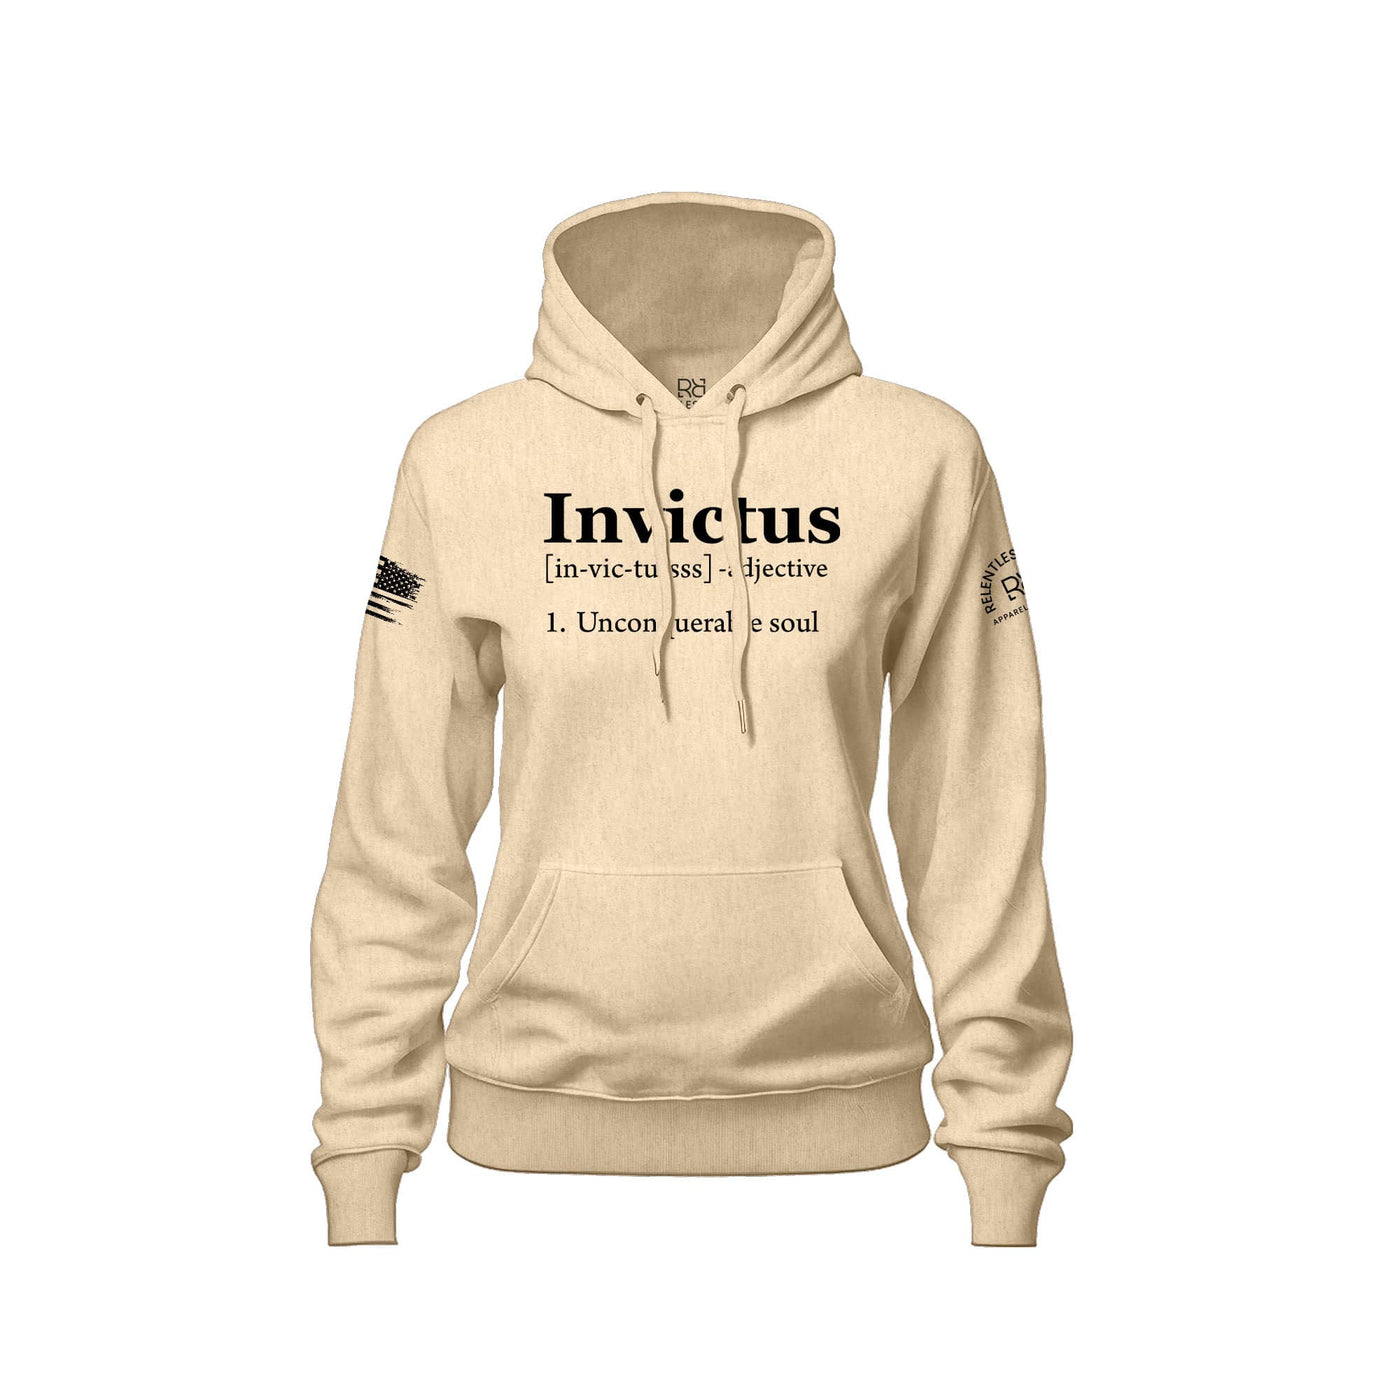 Invictus | Front | Women's Hoodie